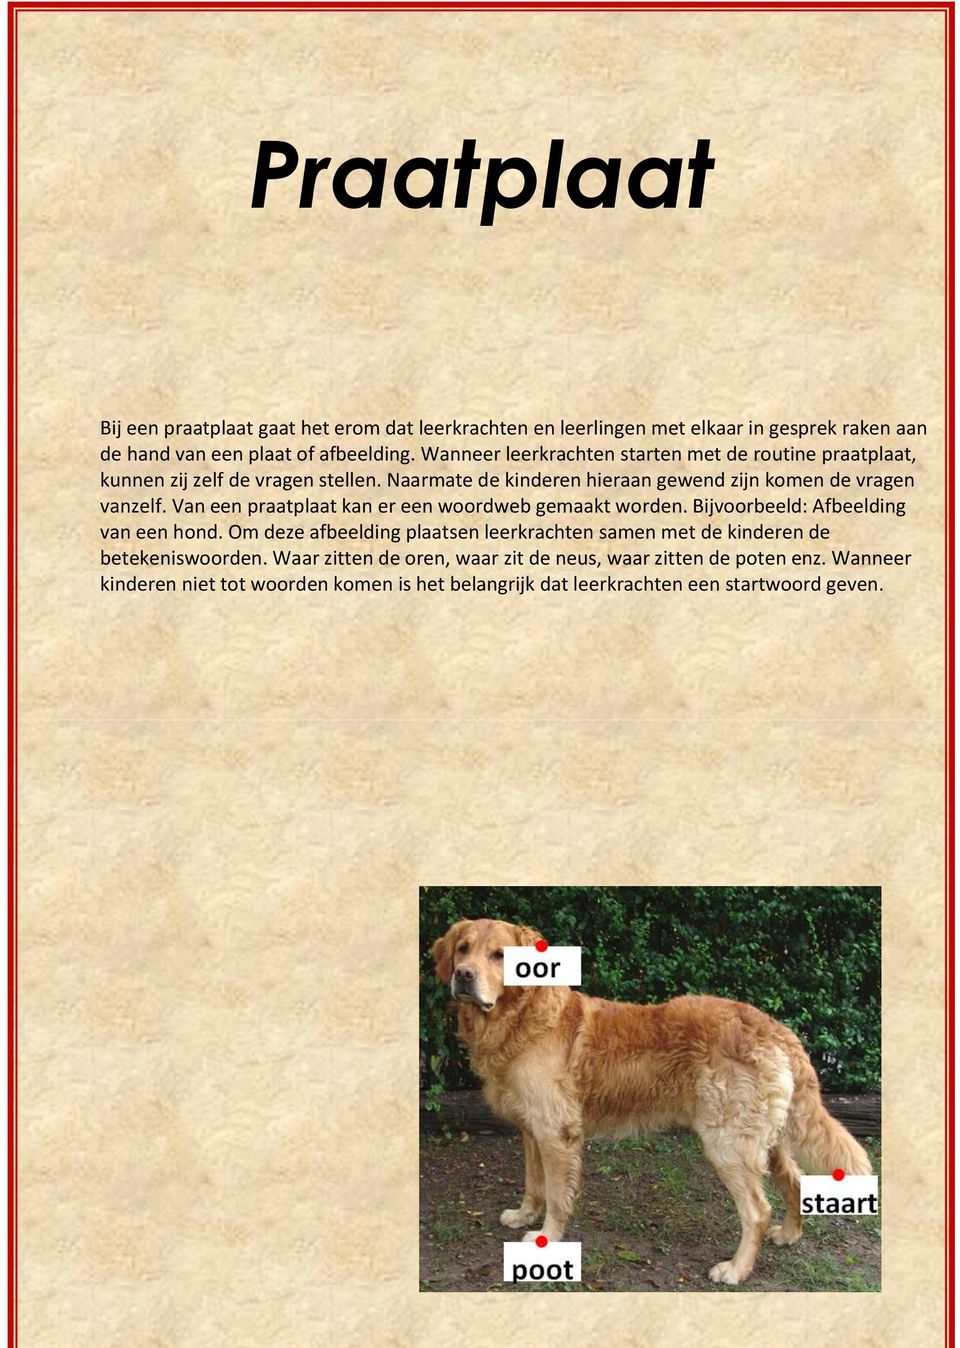 Van een praatplaat kan er een woordweb gemaakt worden. Bijvoorbeeld: Afbeelding van een hond.